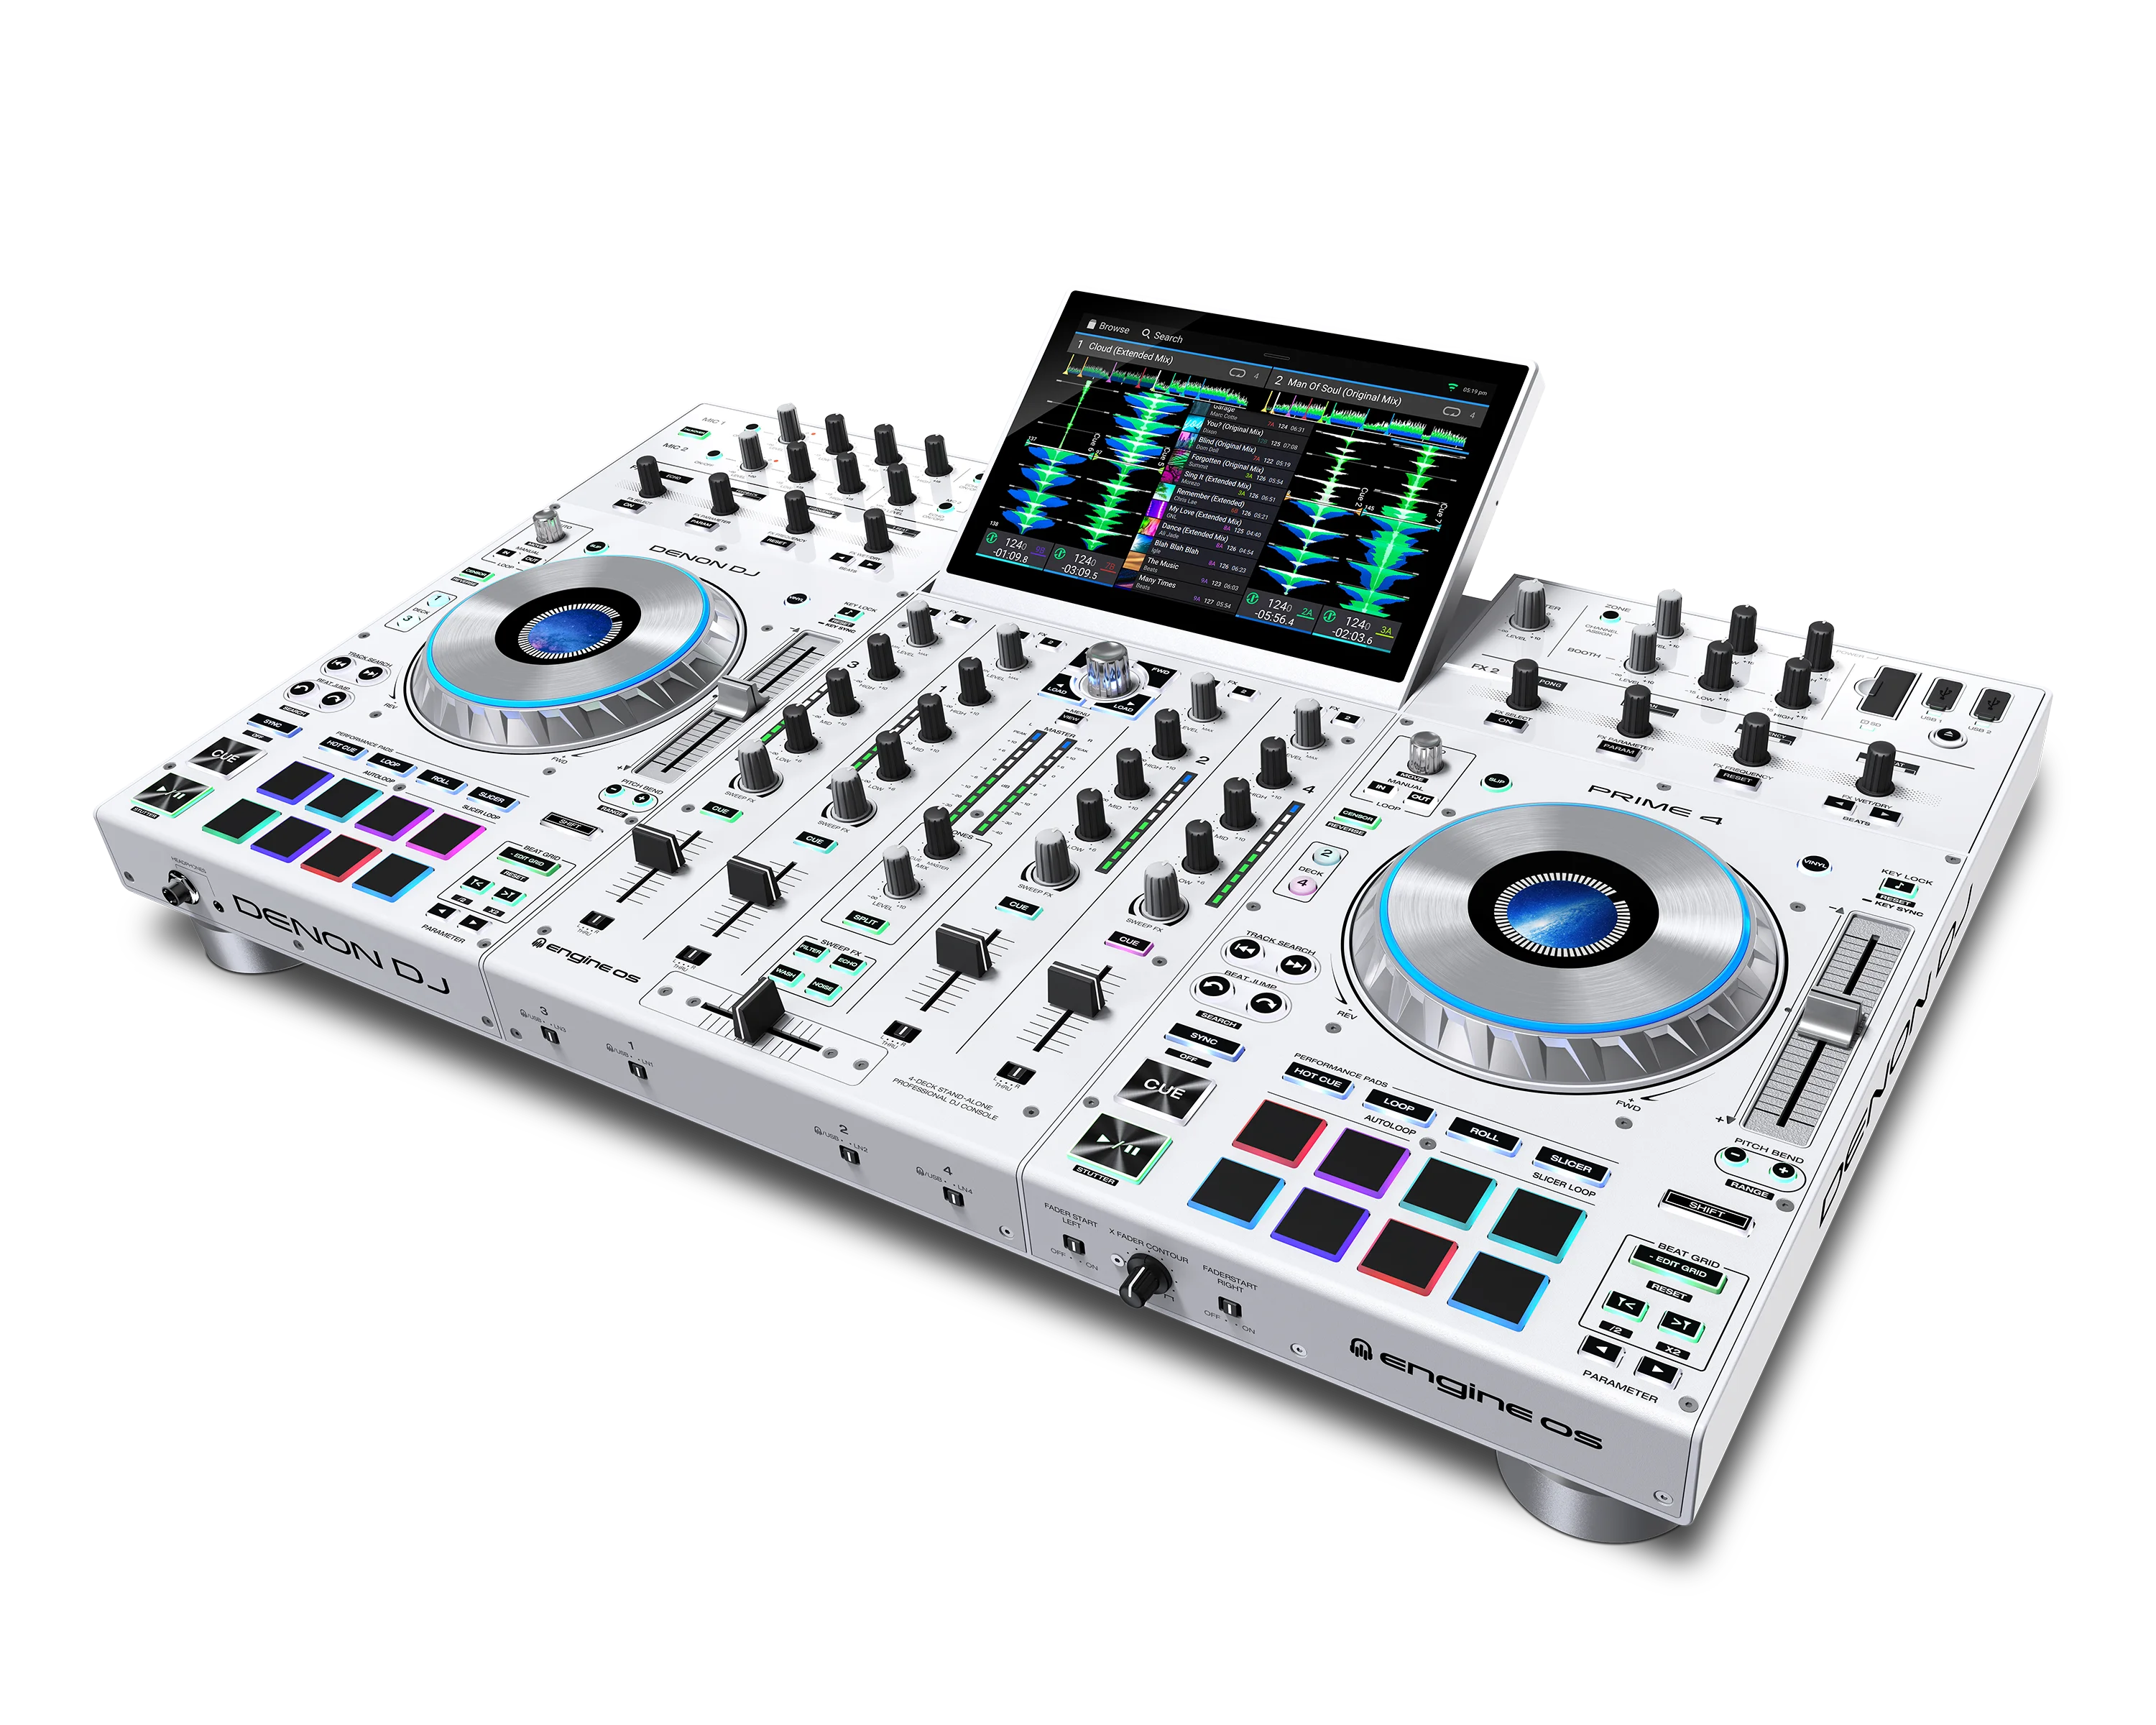 

Летняя распродажа, скидка на покупку с уверенностью, новый 4-дельный автономный DJ-контроллер Denon Prime 4 с белым сенсорным экраном 10 дюймов